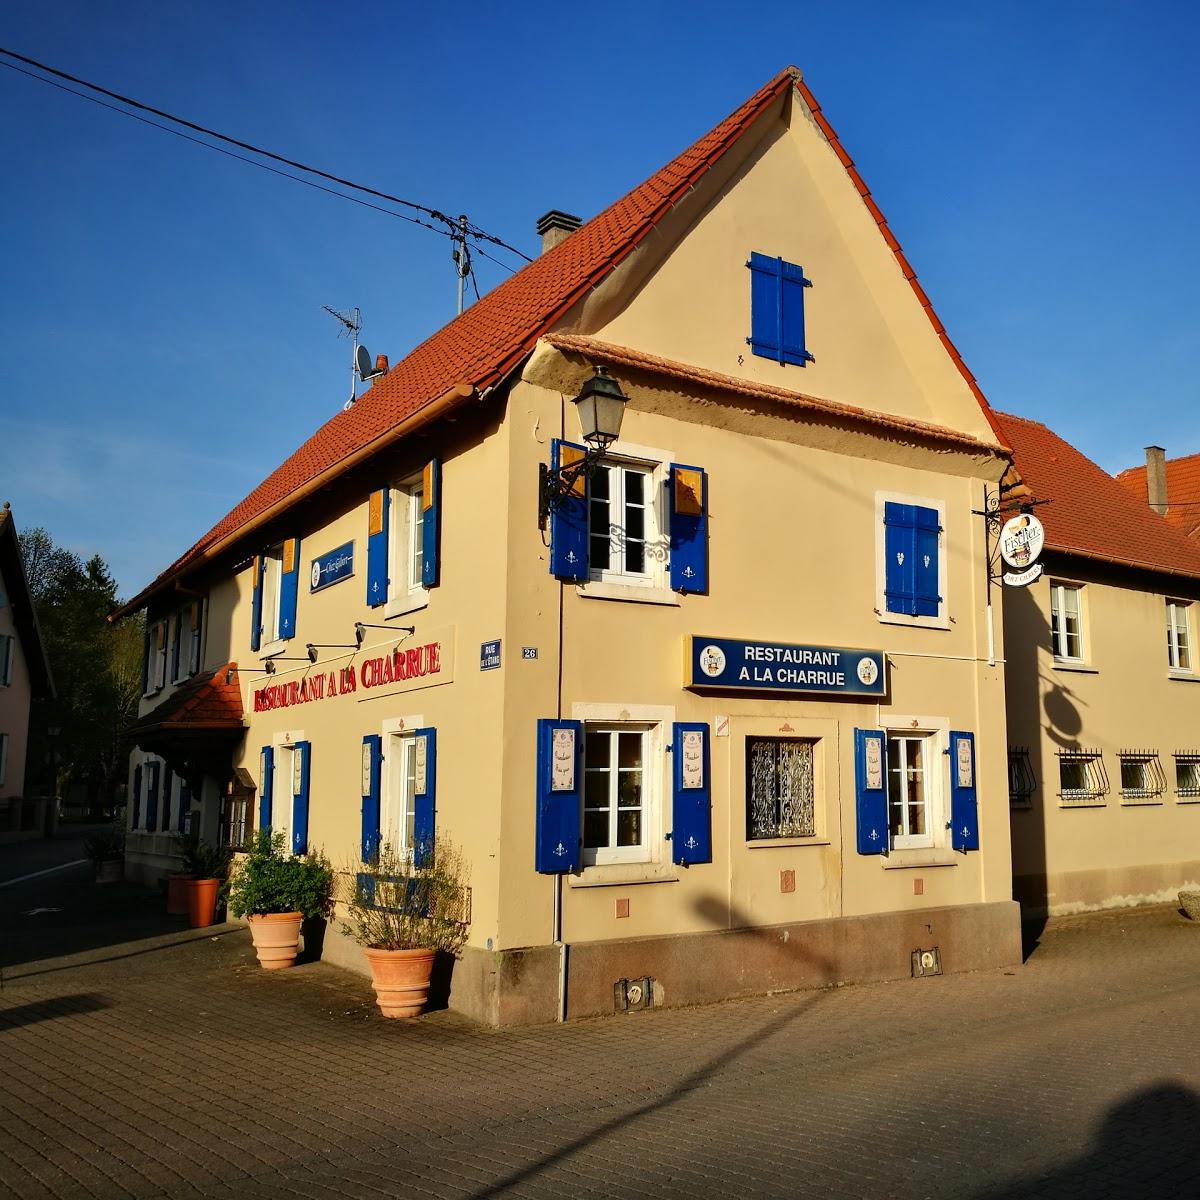 Restaurant "A La Charrue" in Lauterbourg